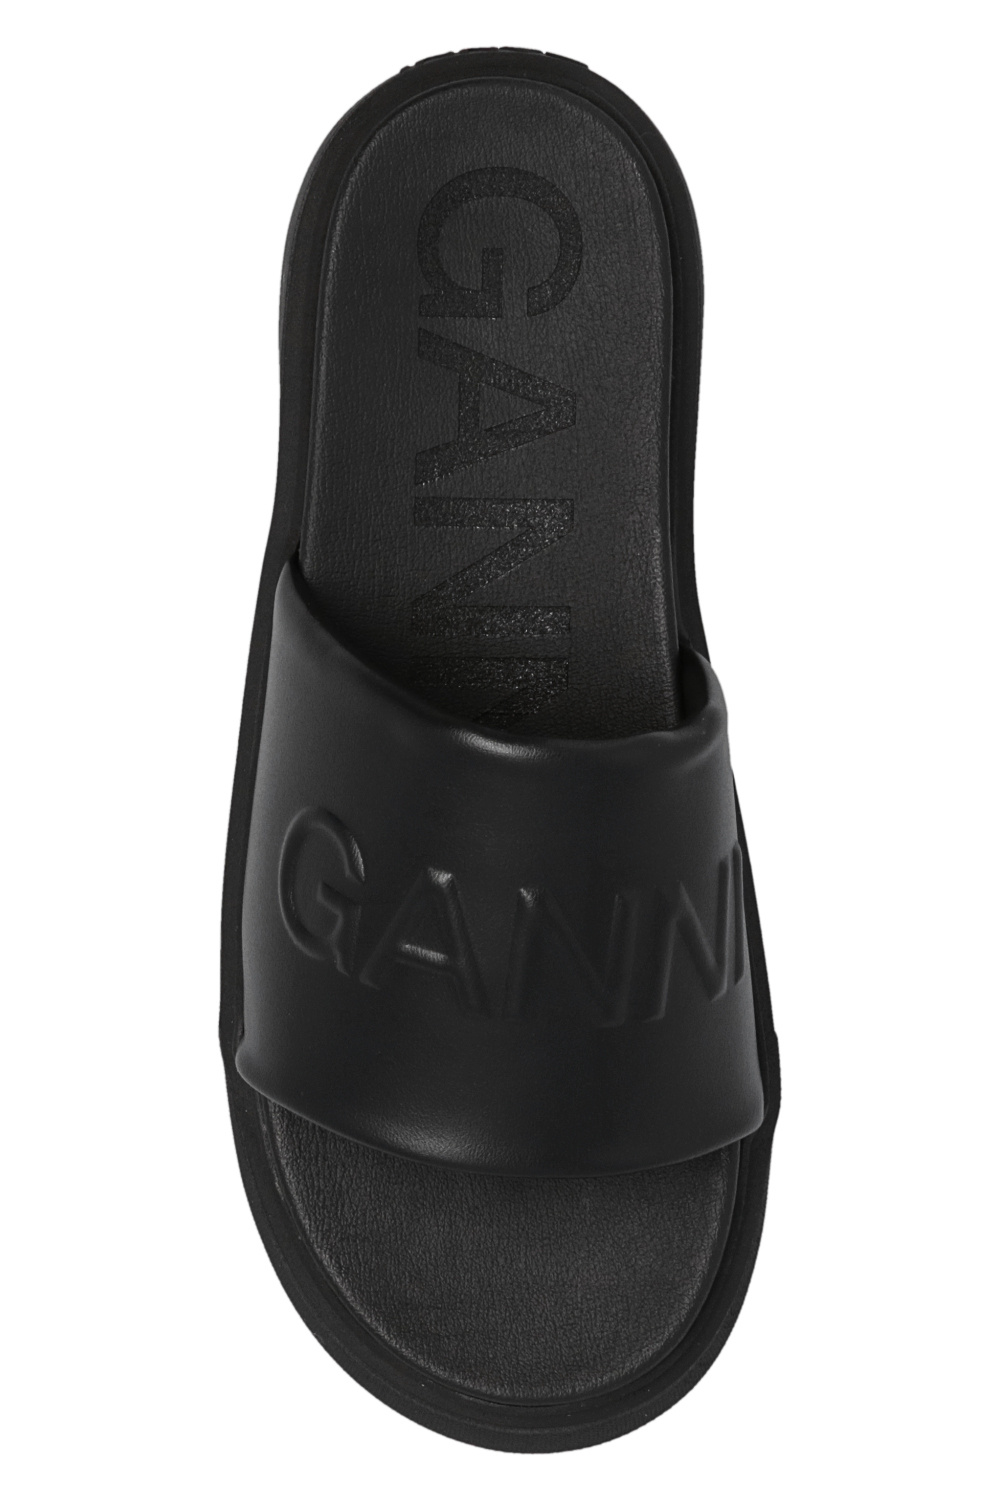 Ganni Puma R78 V Jr Ultra Grey Ultra Grey Black Marathon Running shoes you Sneakers 373617-07